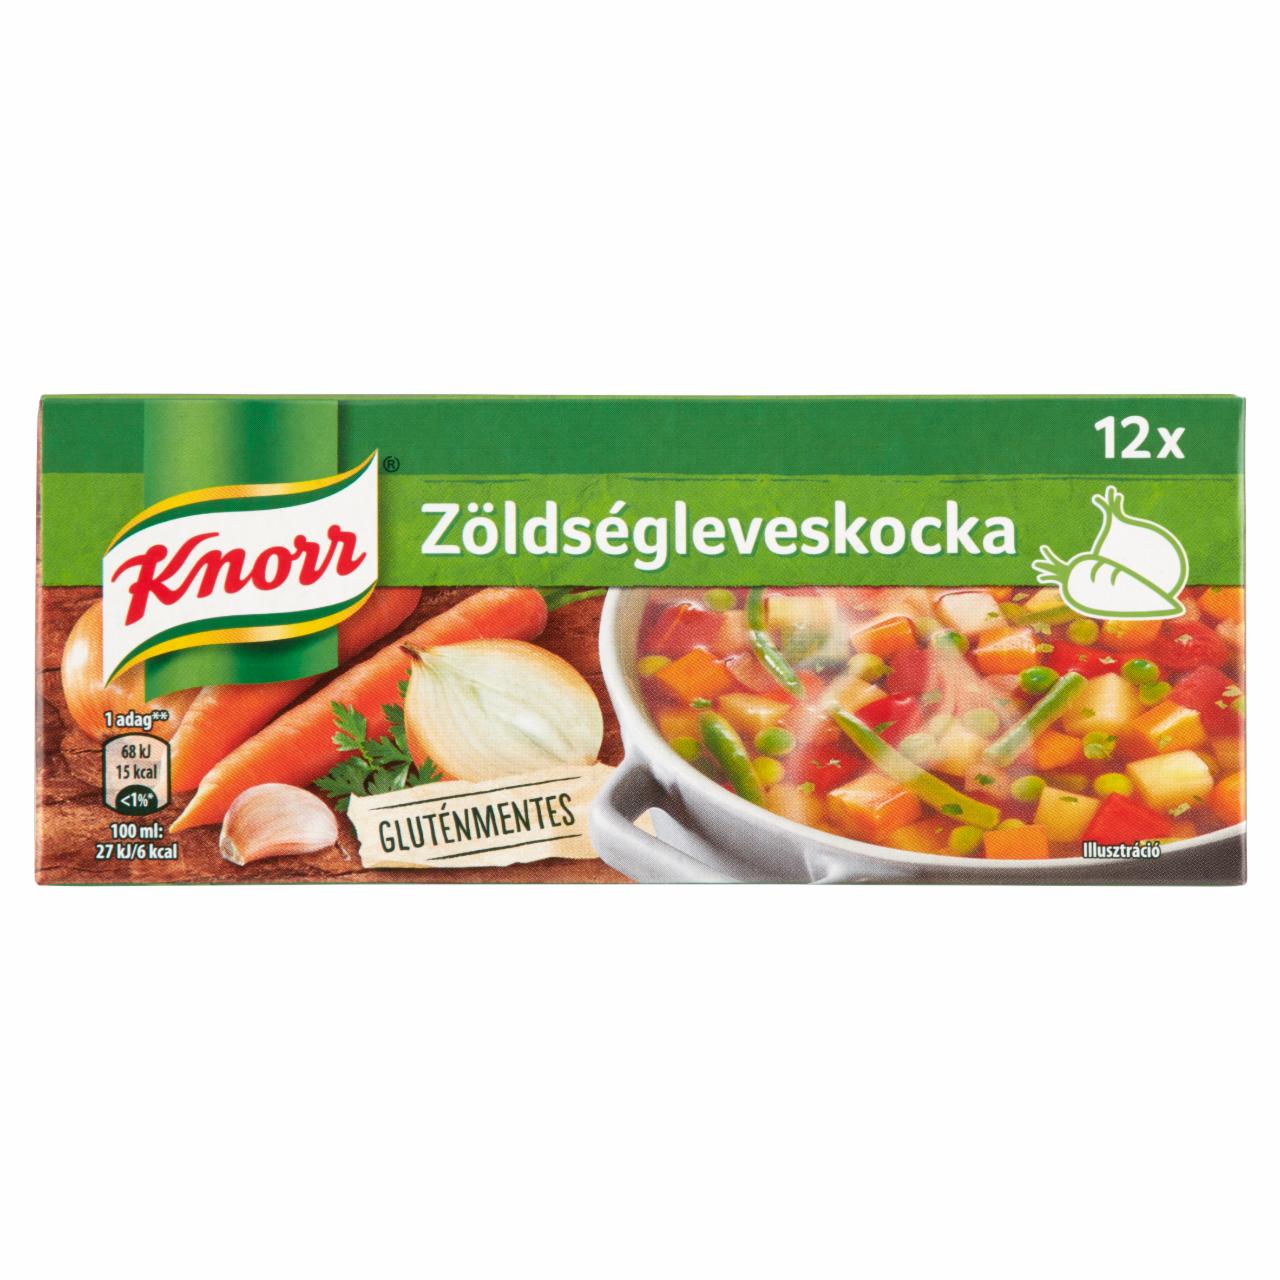 Képek - Knorr zöldségleveskocka 12 x 10 g (120 g)